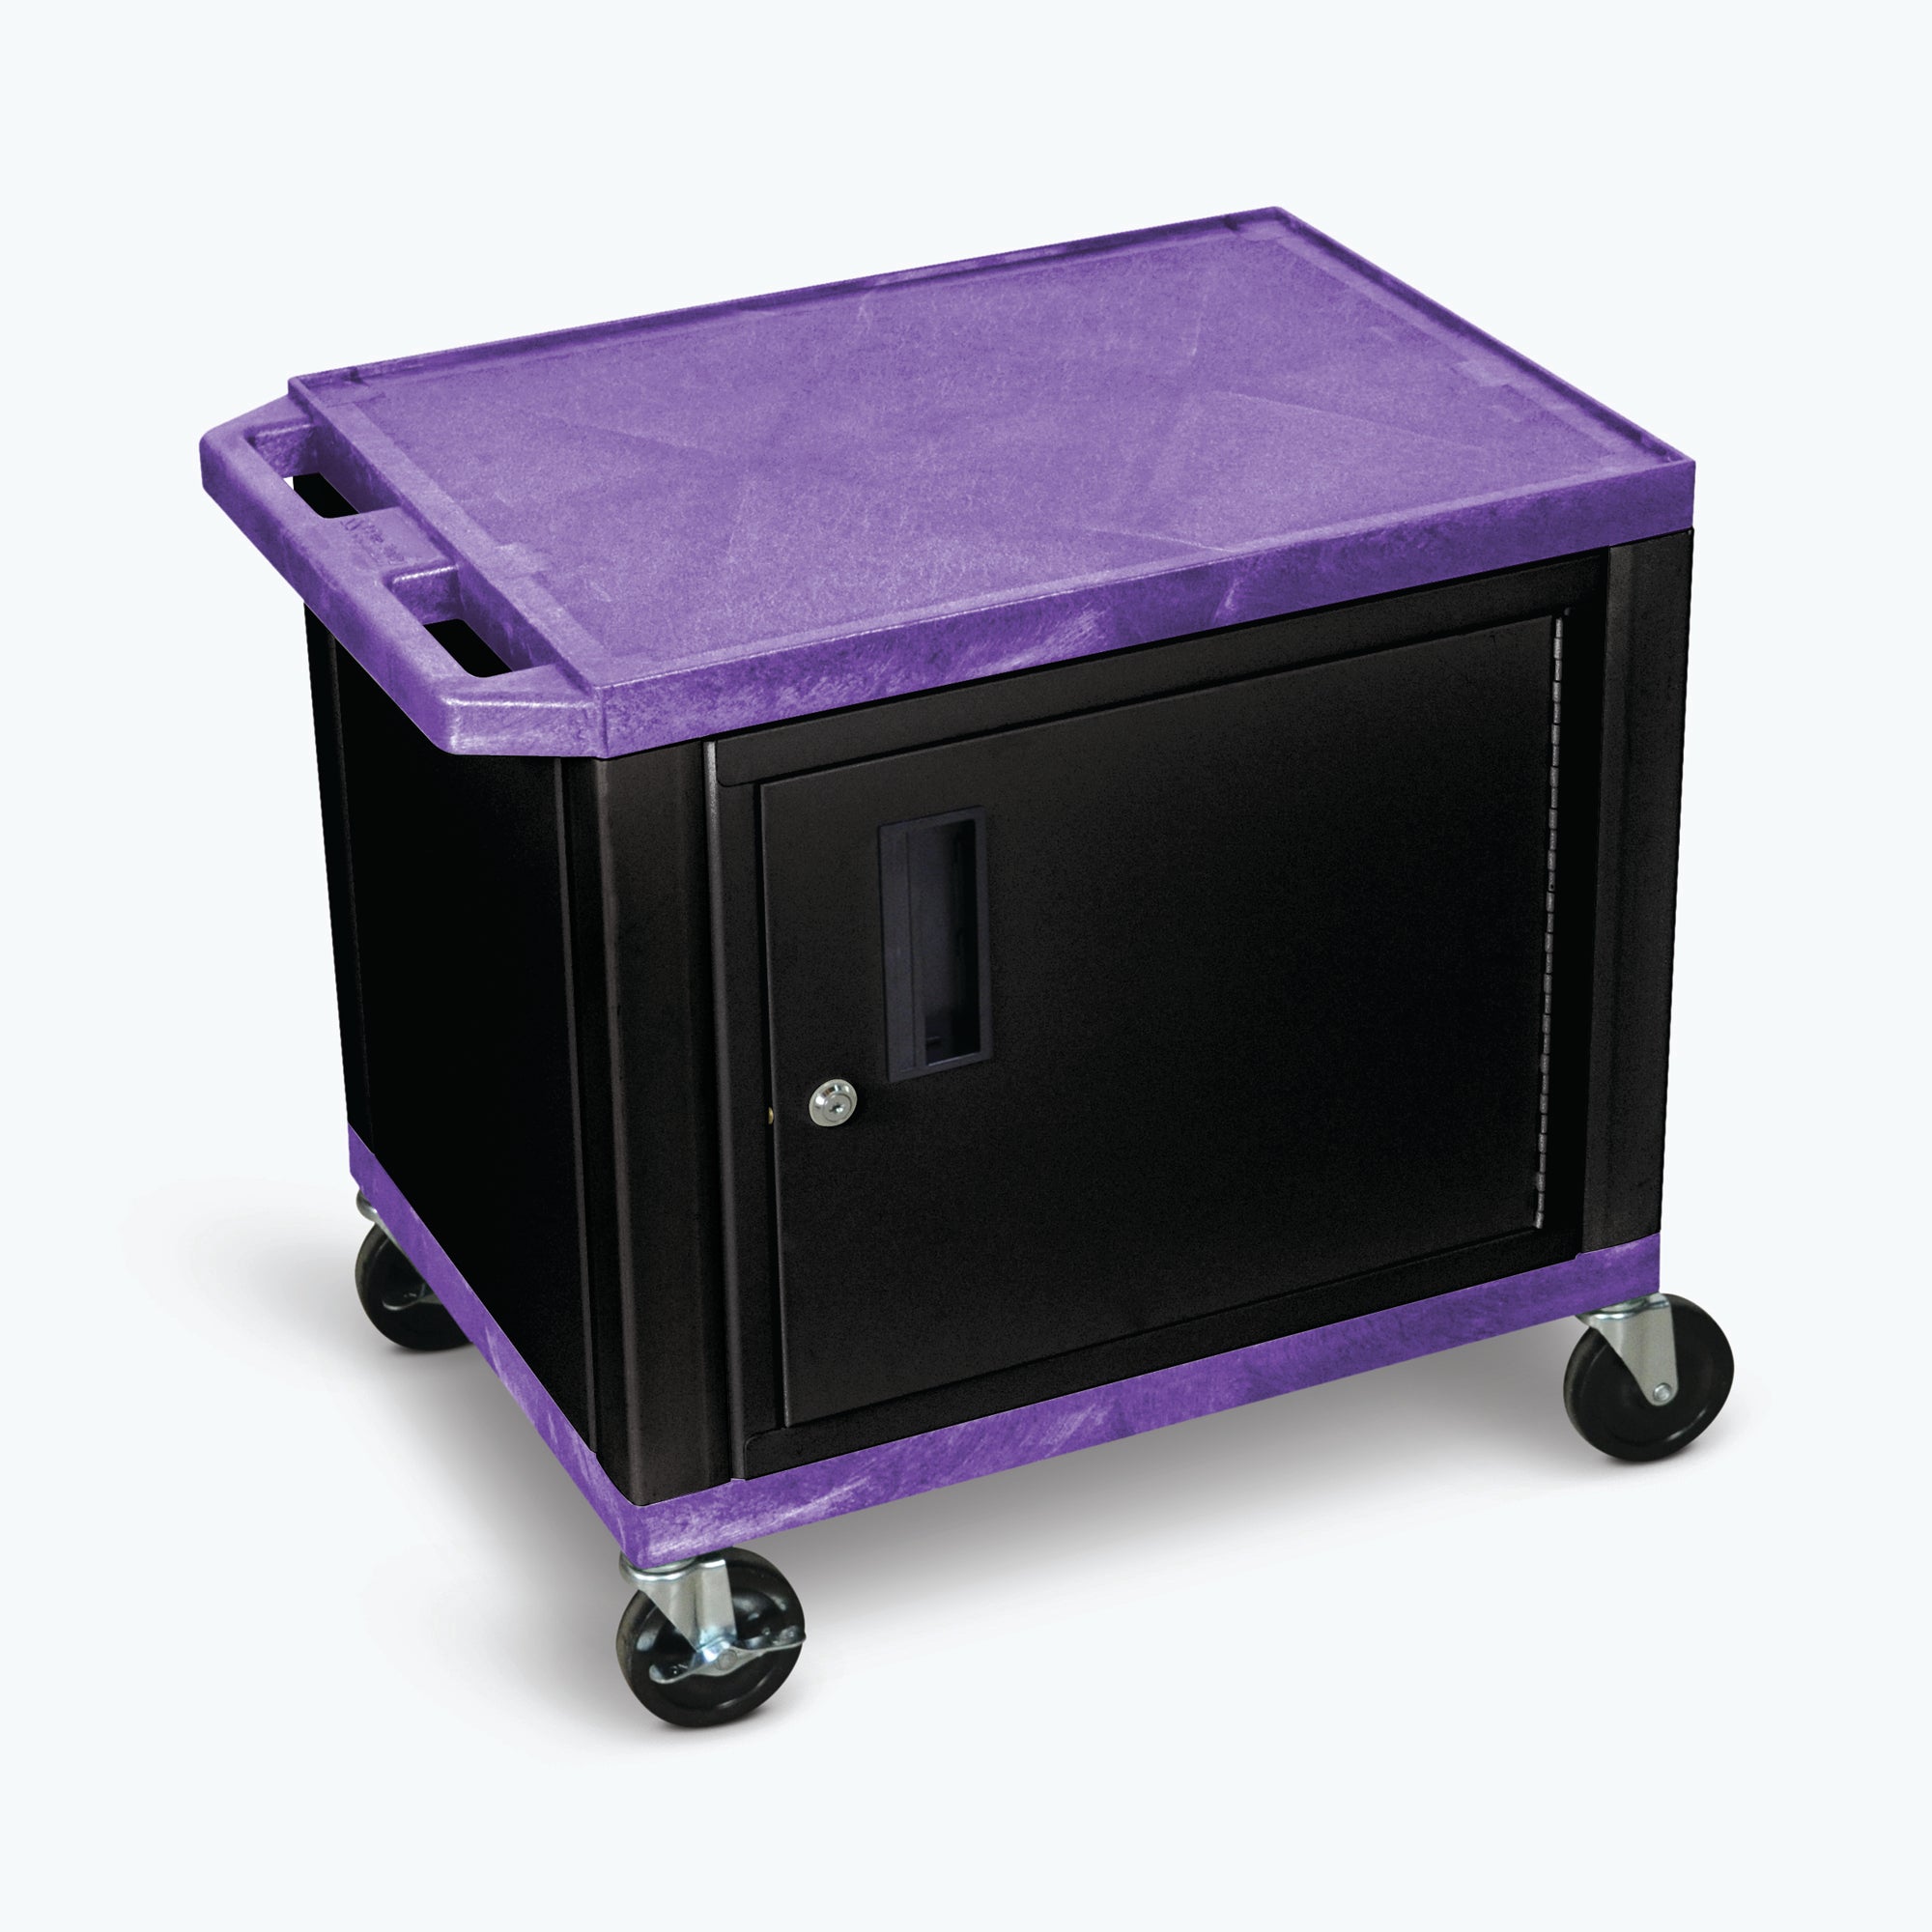 Luxor 26" 2-Shelf Tuffy AV Cart with Electric Assembly, Black Cabinet & Legs (Purple Shelves) - WT26PC2E-B